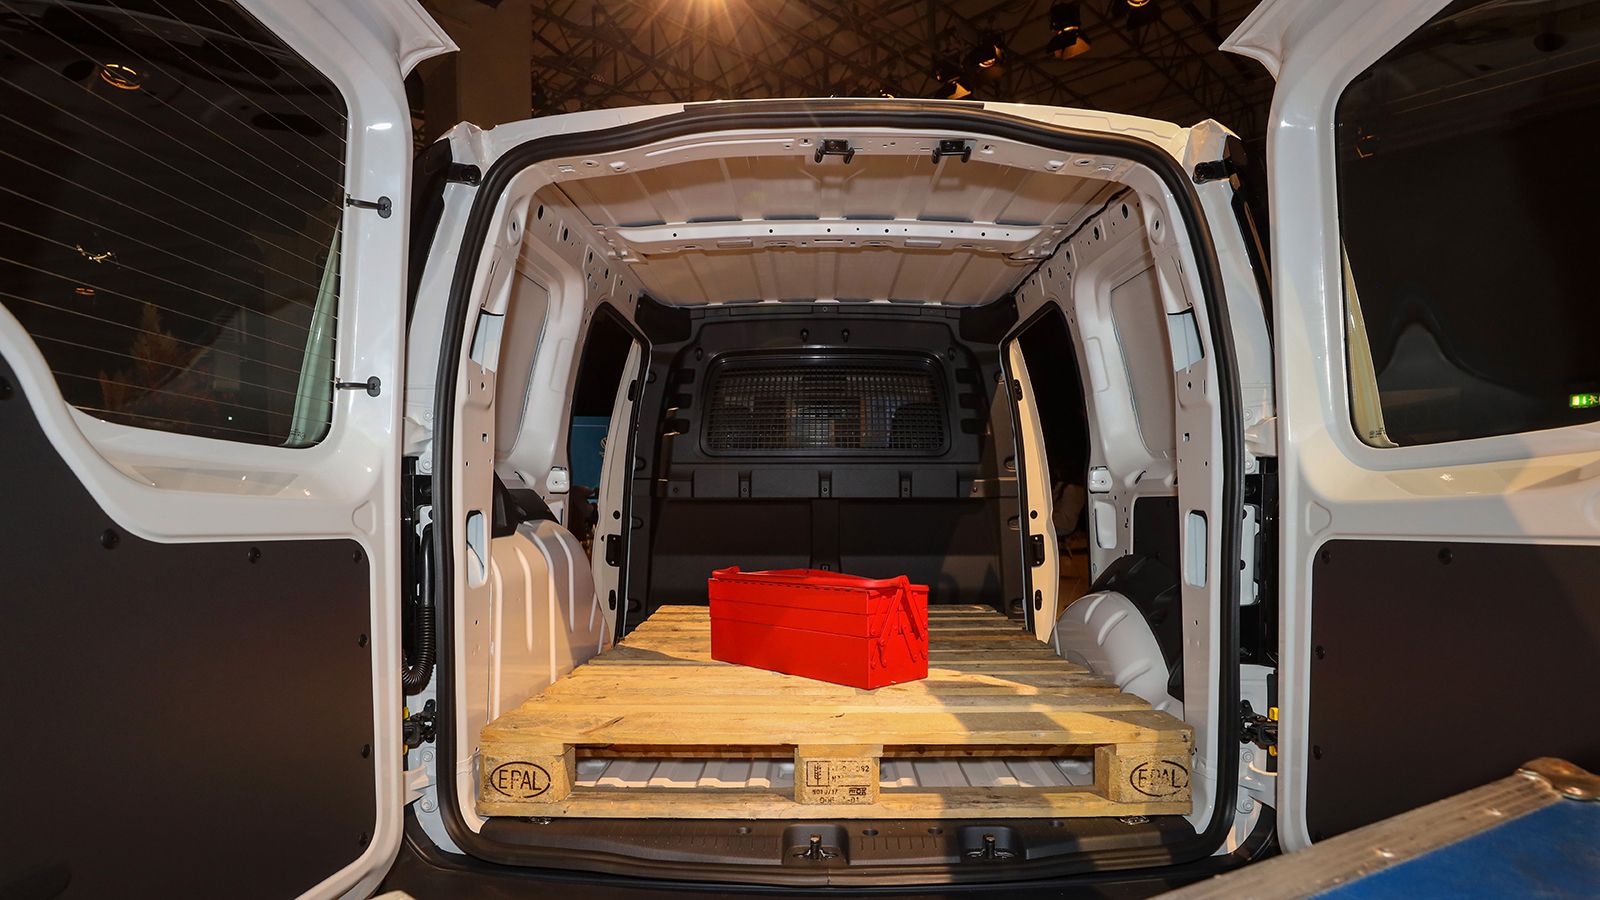 Οι ευρωπαλέτες (1.200 x 800 χλστ.) μπορούν να μπουν στον χώρο φόρτωσης του Caddy Cargo στο πλάι, χάρη στο πλάτος των 1,23 μέτρων μεταξύ των θόλων των τροχών. Στην έκδοση Maxi, μάλιστα, μπορούν να φορτ